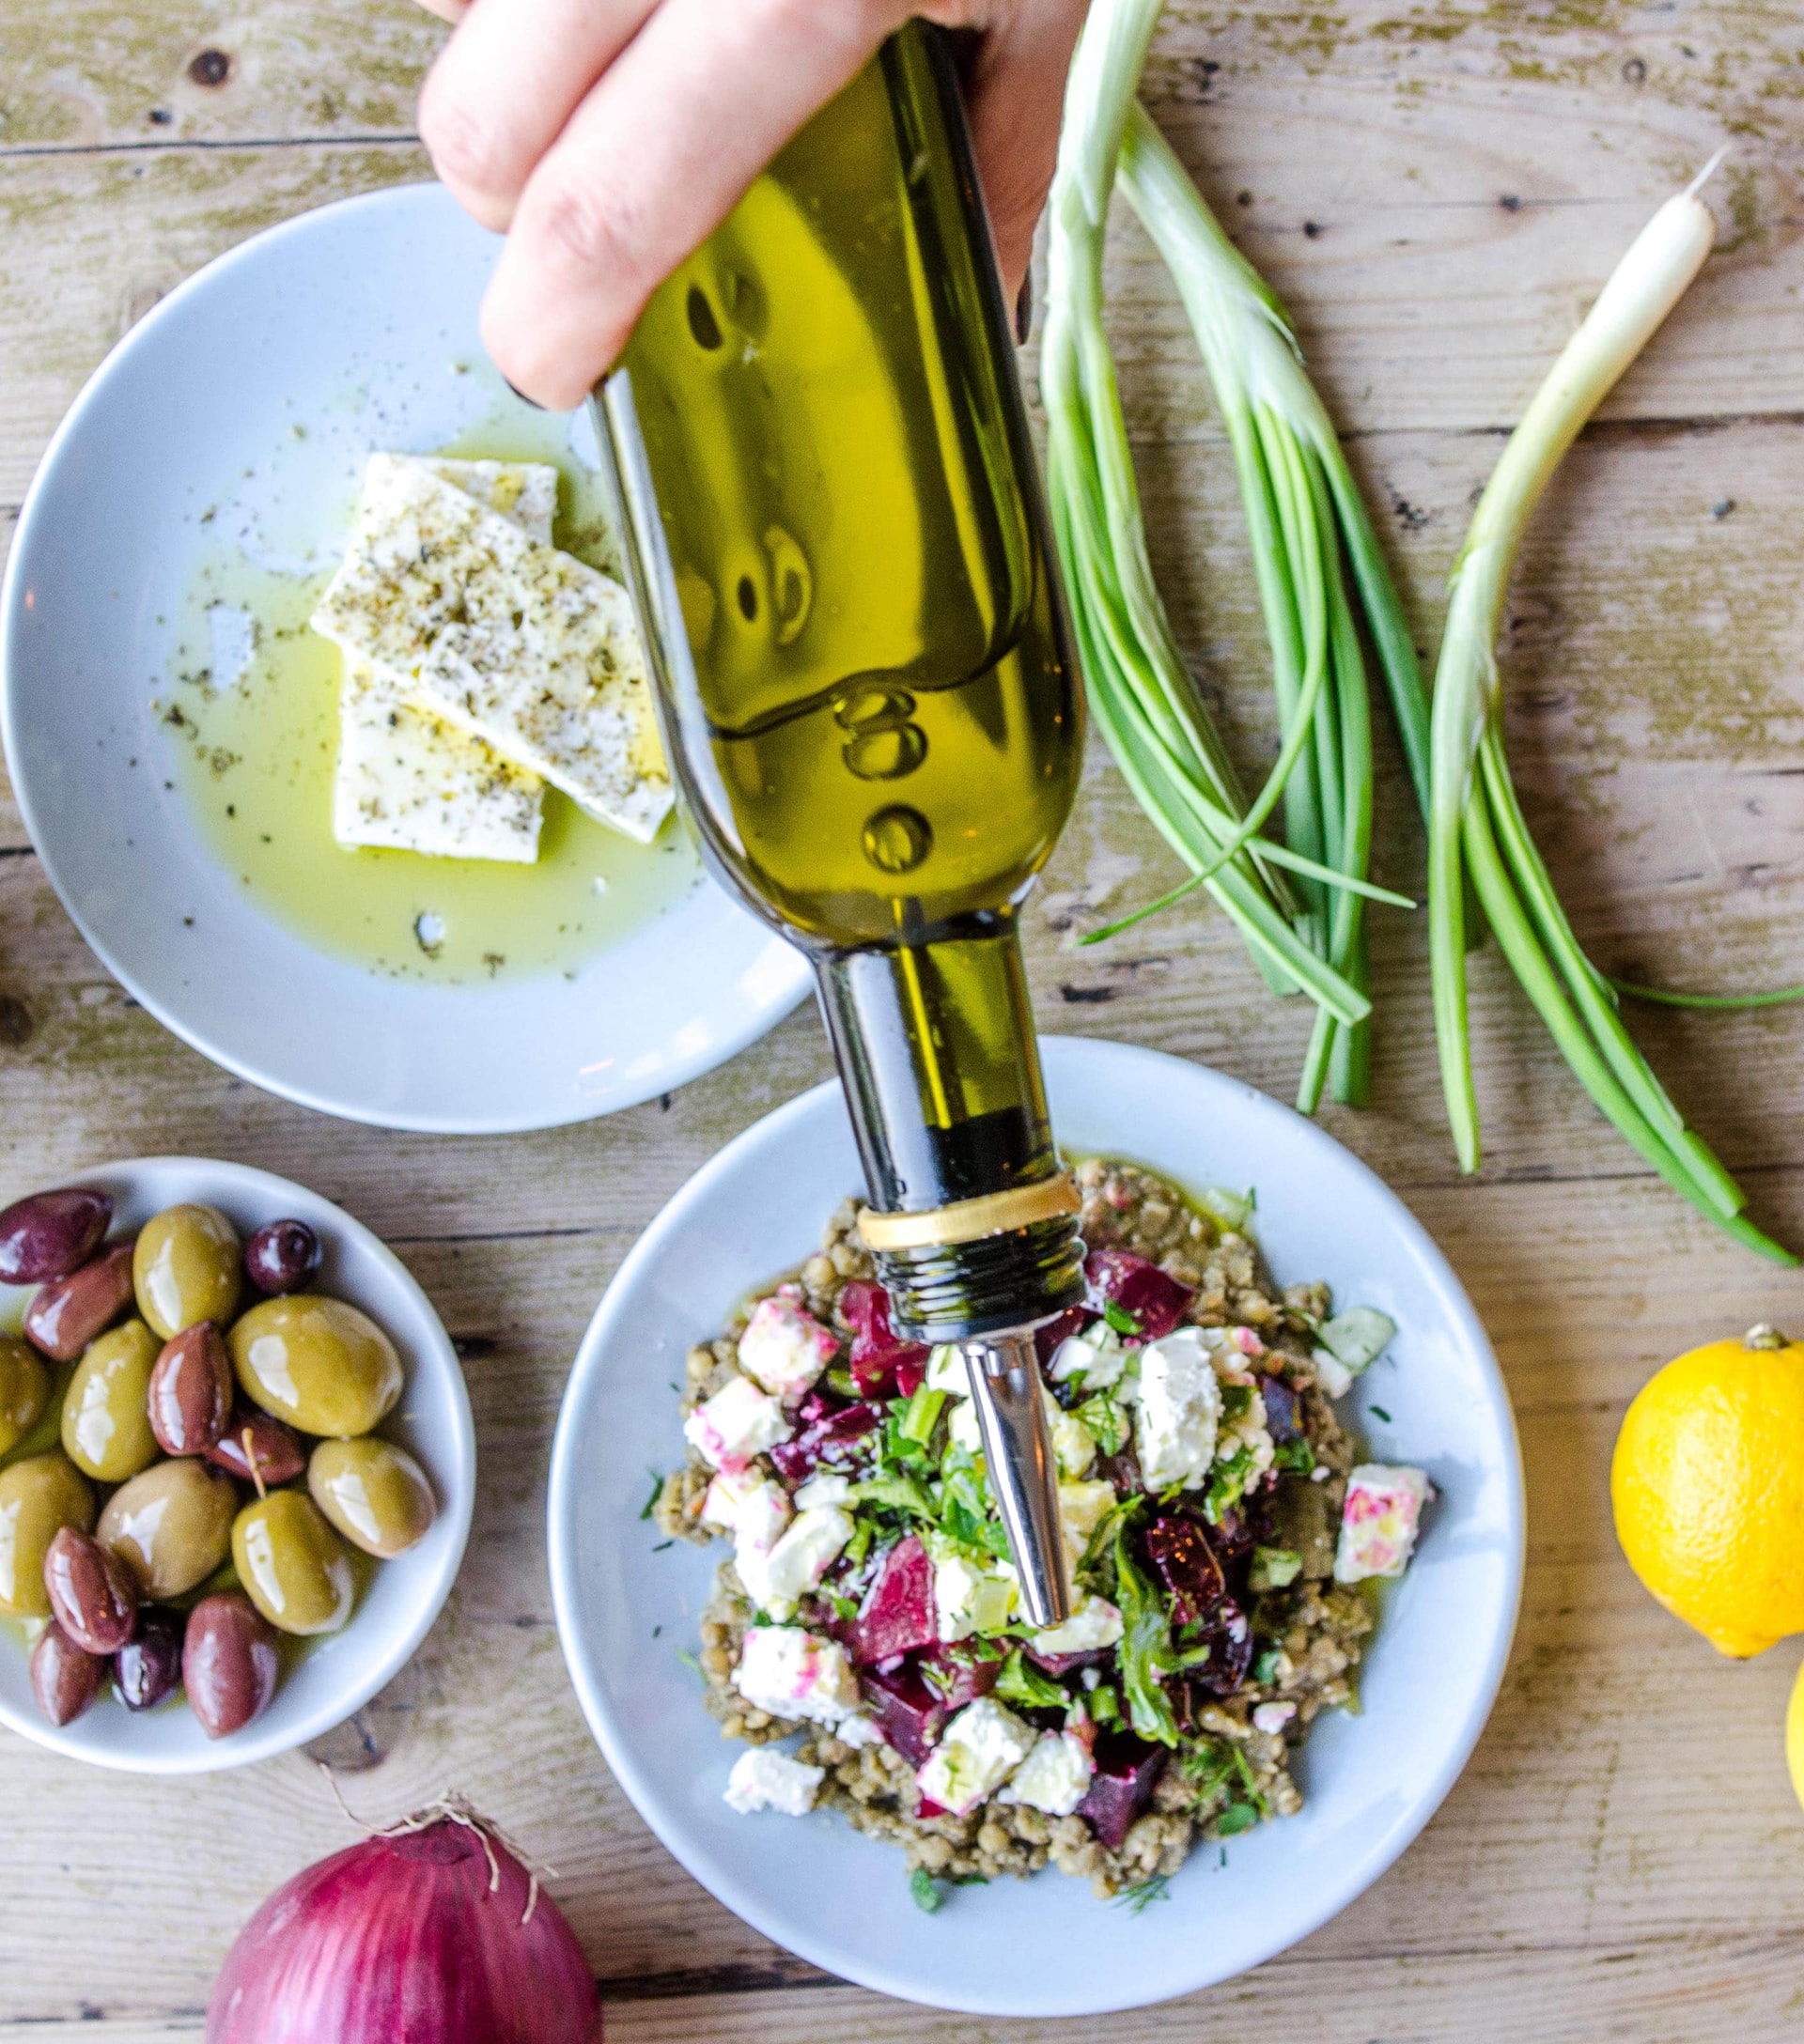 The Real Greek - Greek Food & Ingredients - 40 days of veg